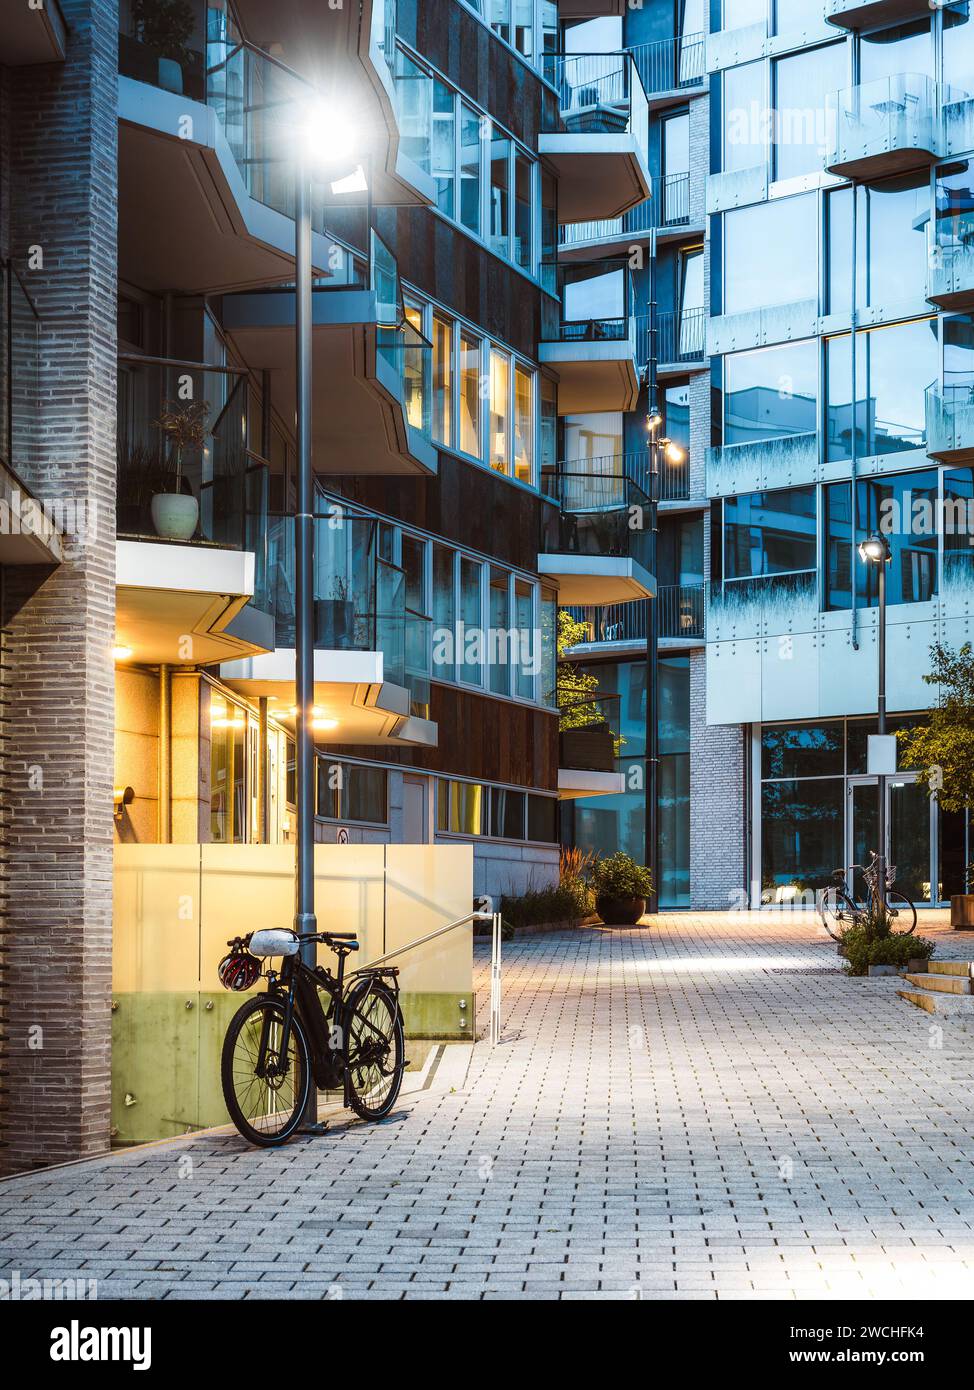 Vélo près de l'entrée de l'immeuble moderne dans le quartier de la ville d'Oslo. Bâtiments résidentiels modernes, architecture scandinave Banque D'Images